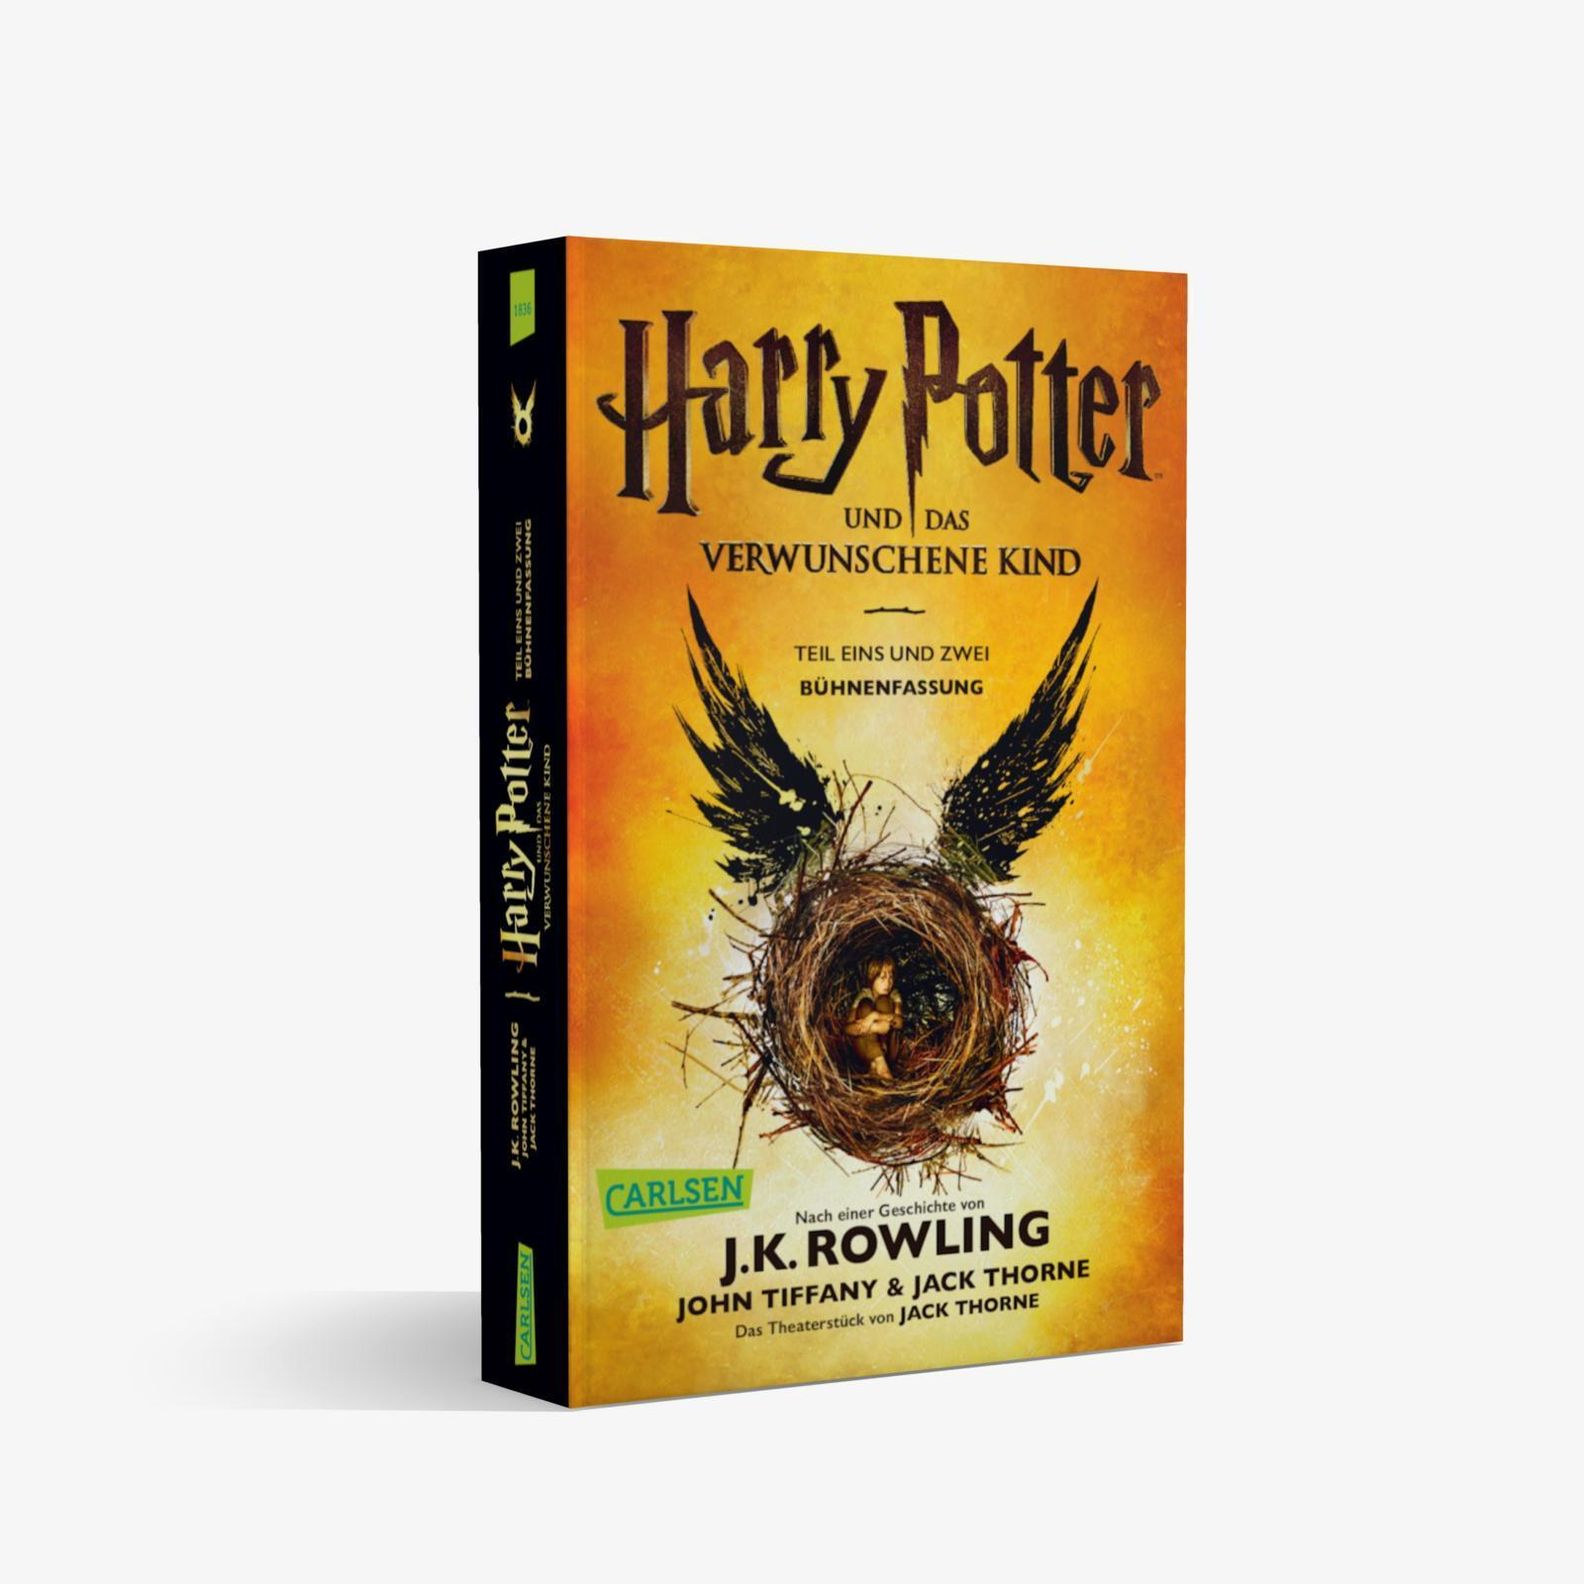 Harry Potter und das verwunschene Kind Buch - Weltbild.de